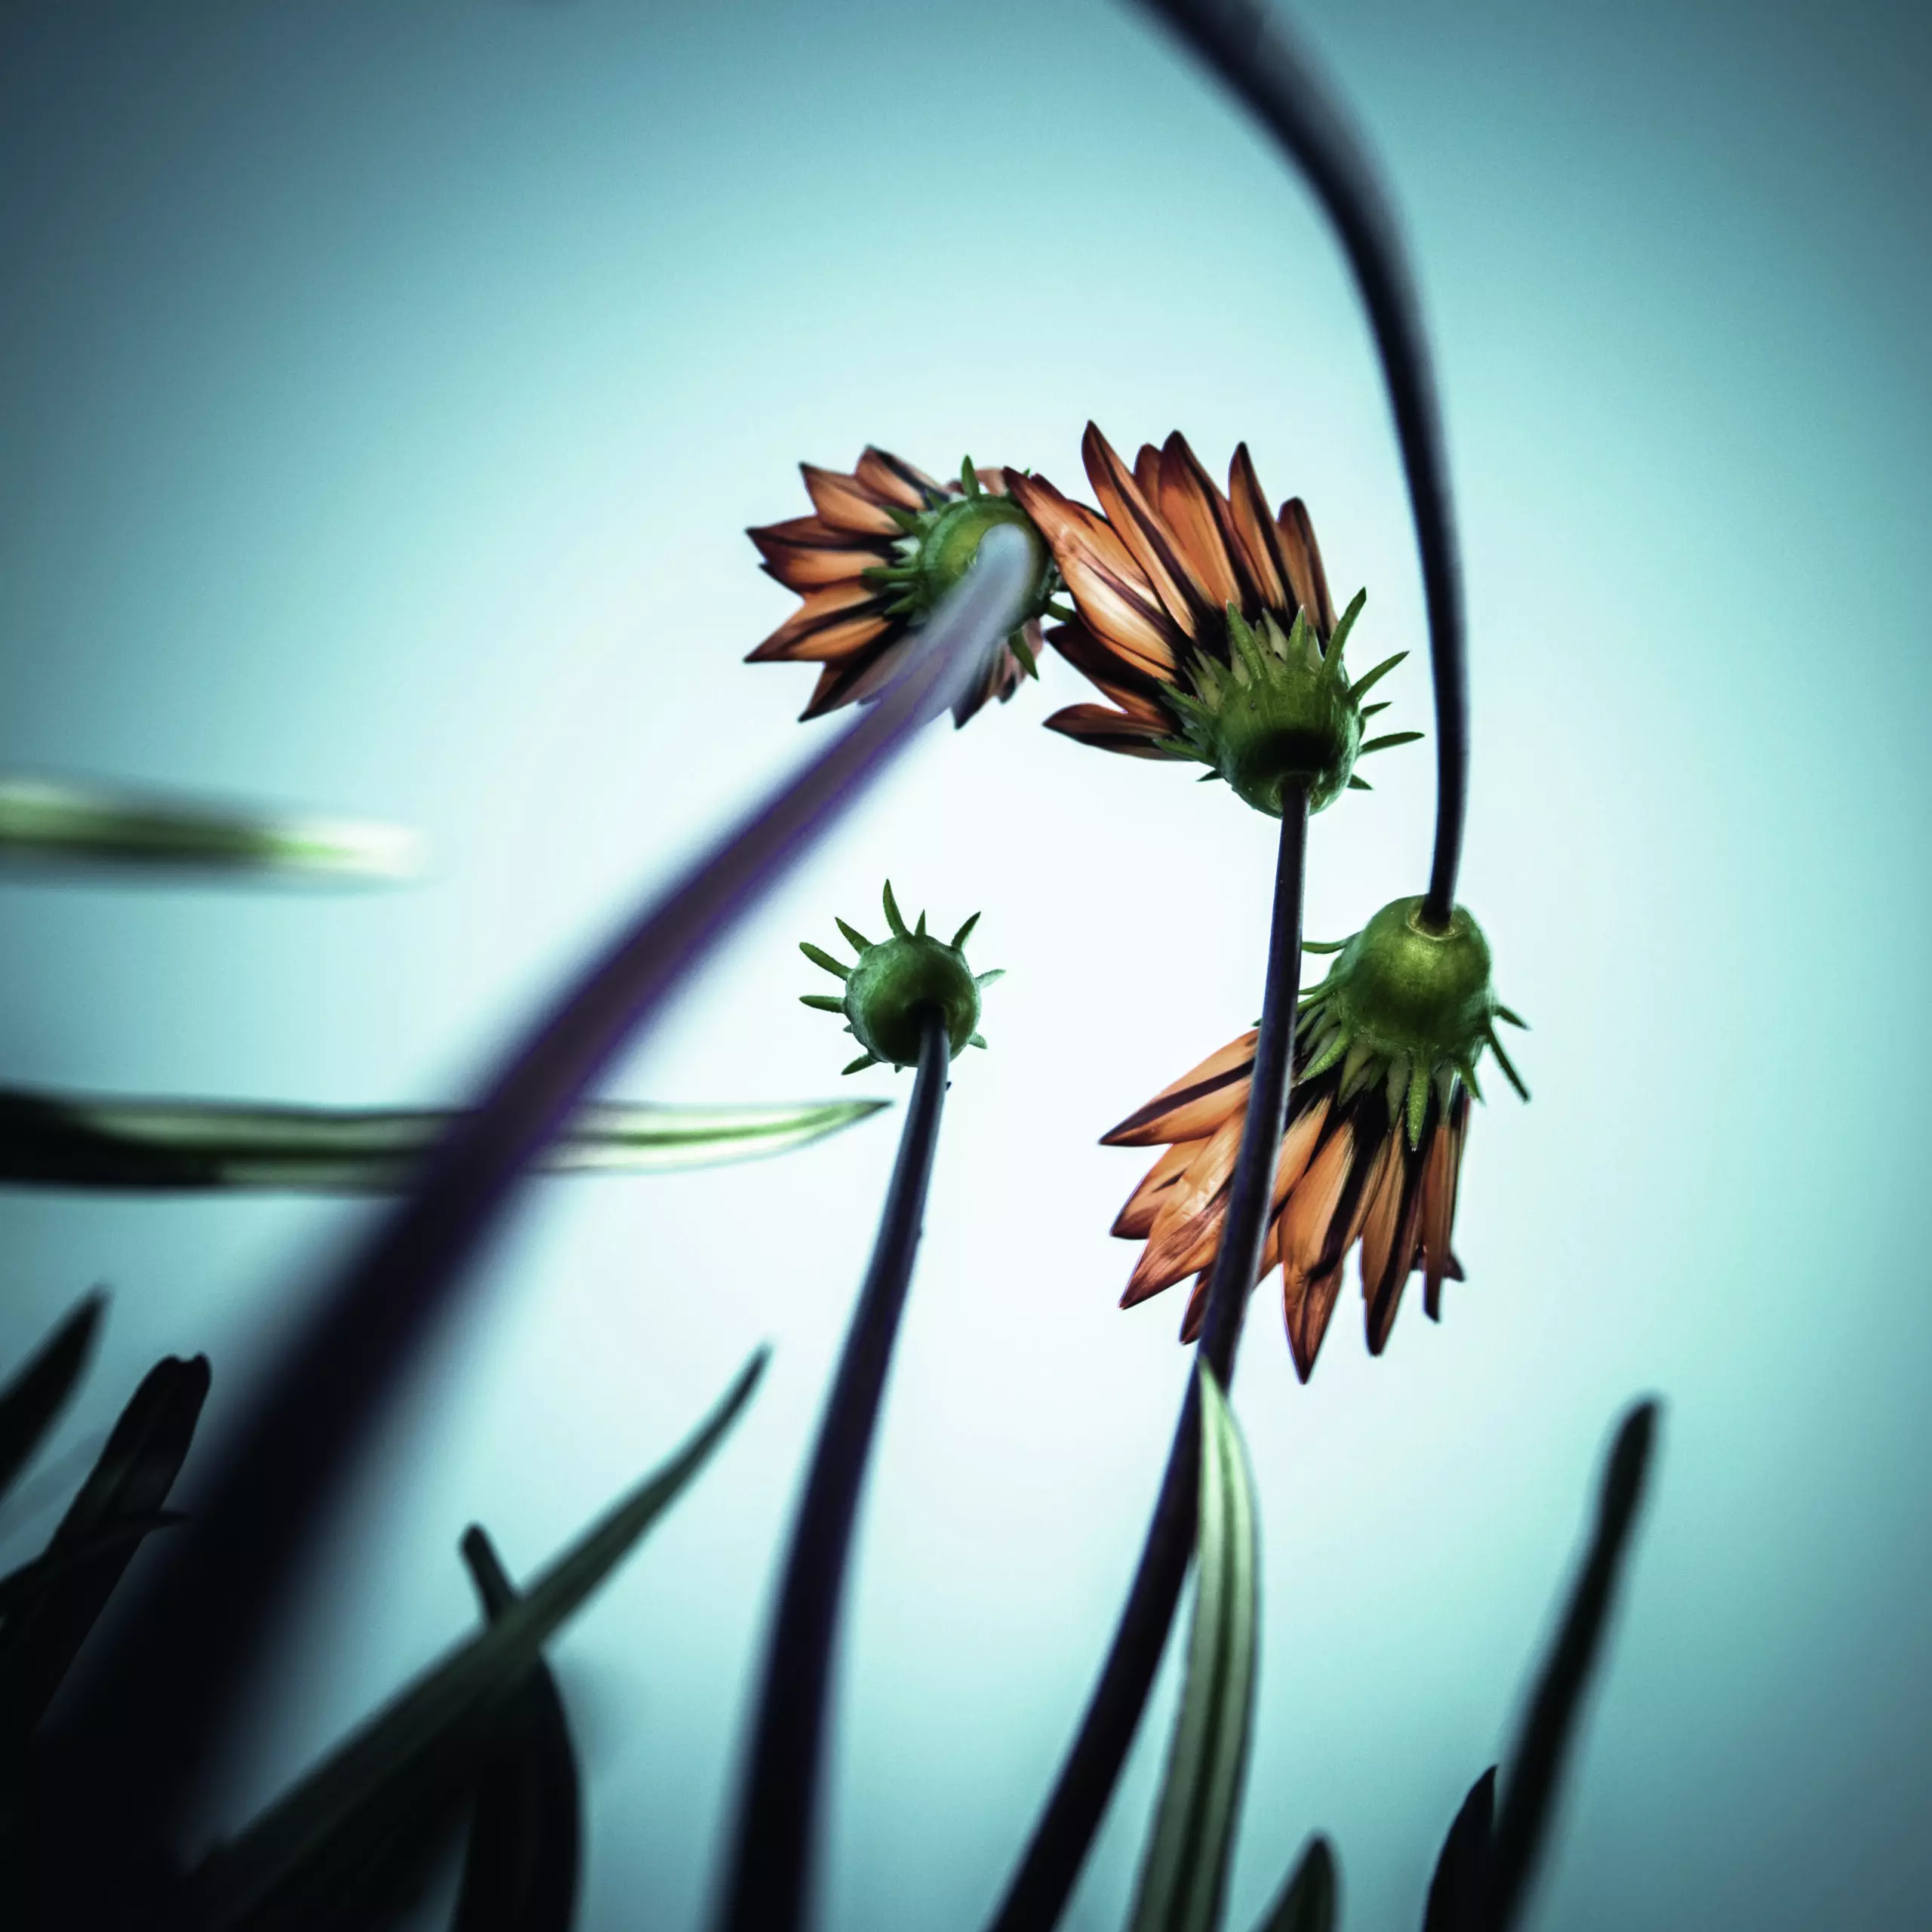 Wandbild (5817) Flower Love by fgr100, 1x.com präsentiert: Kreatives,Natur,Blumen und Blüten,Makro,Sonstiges Kreatives